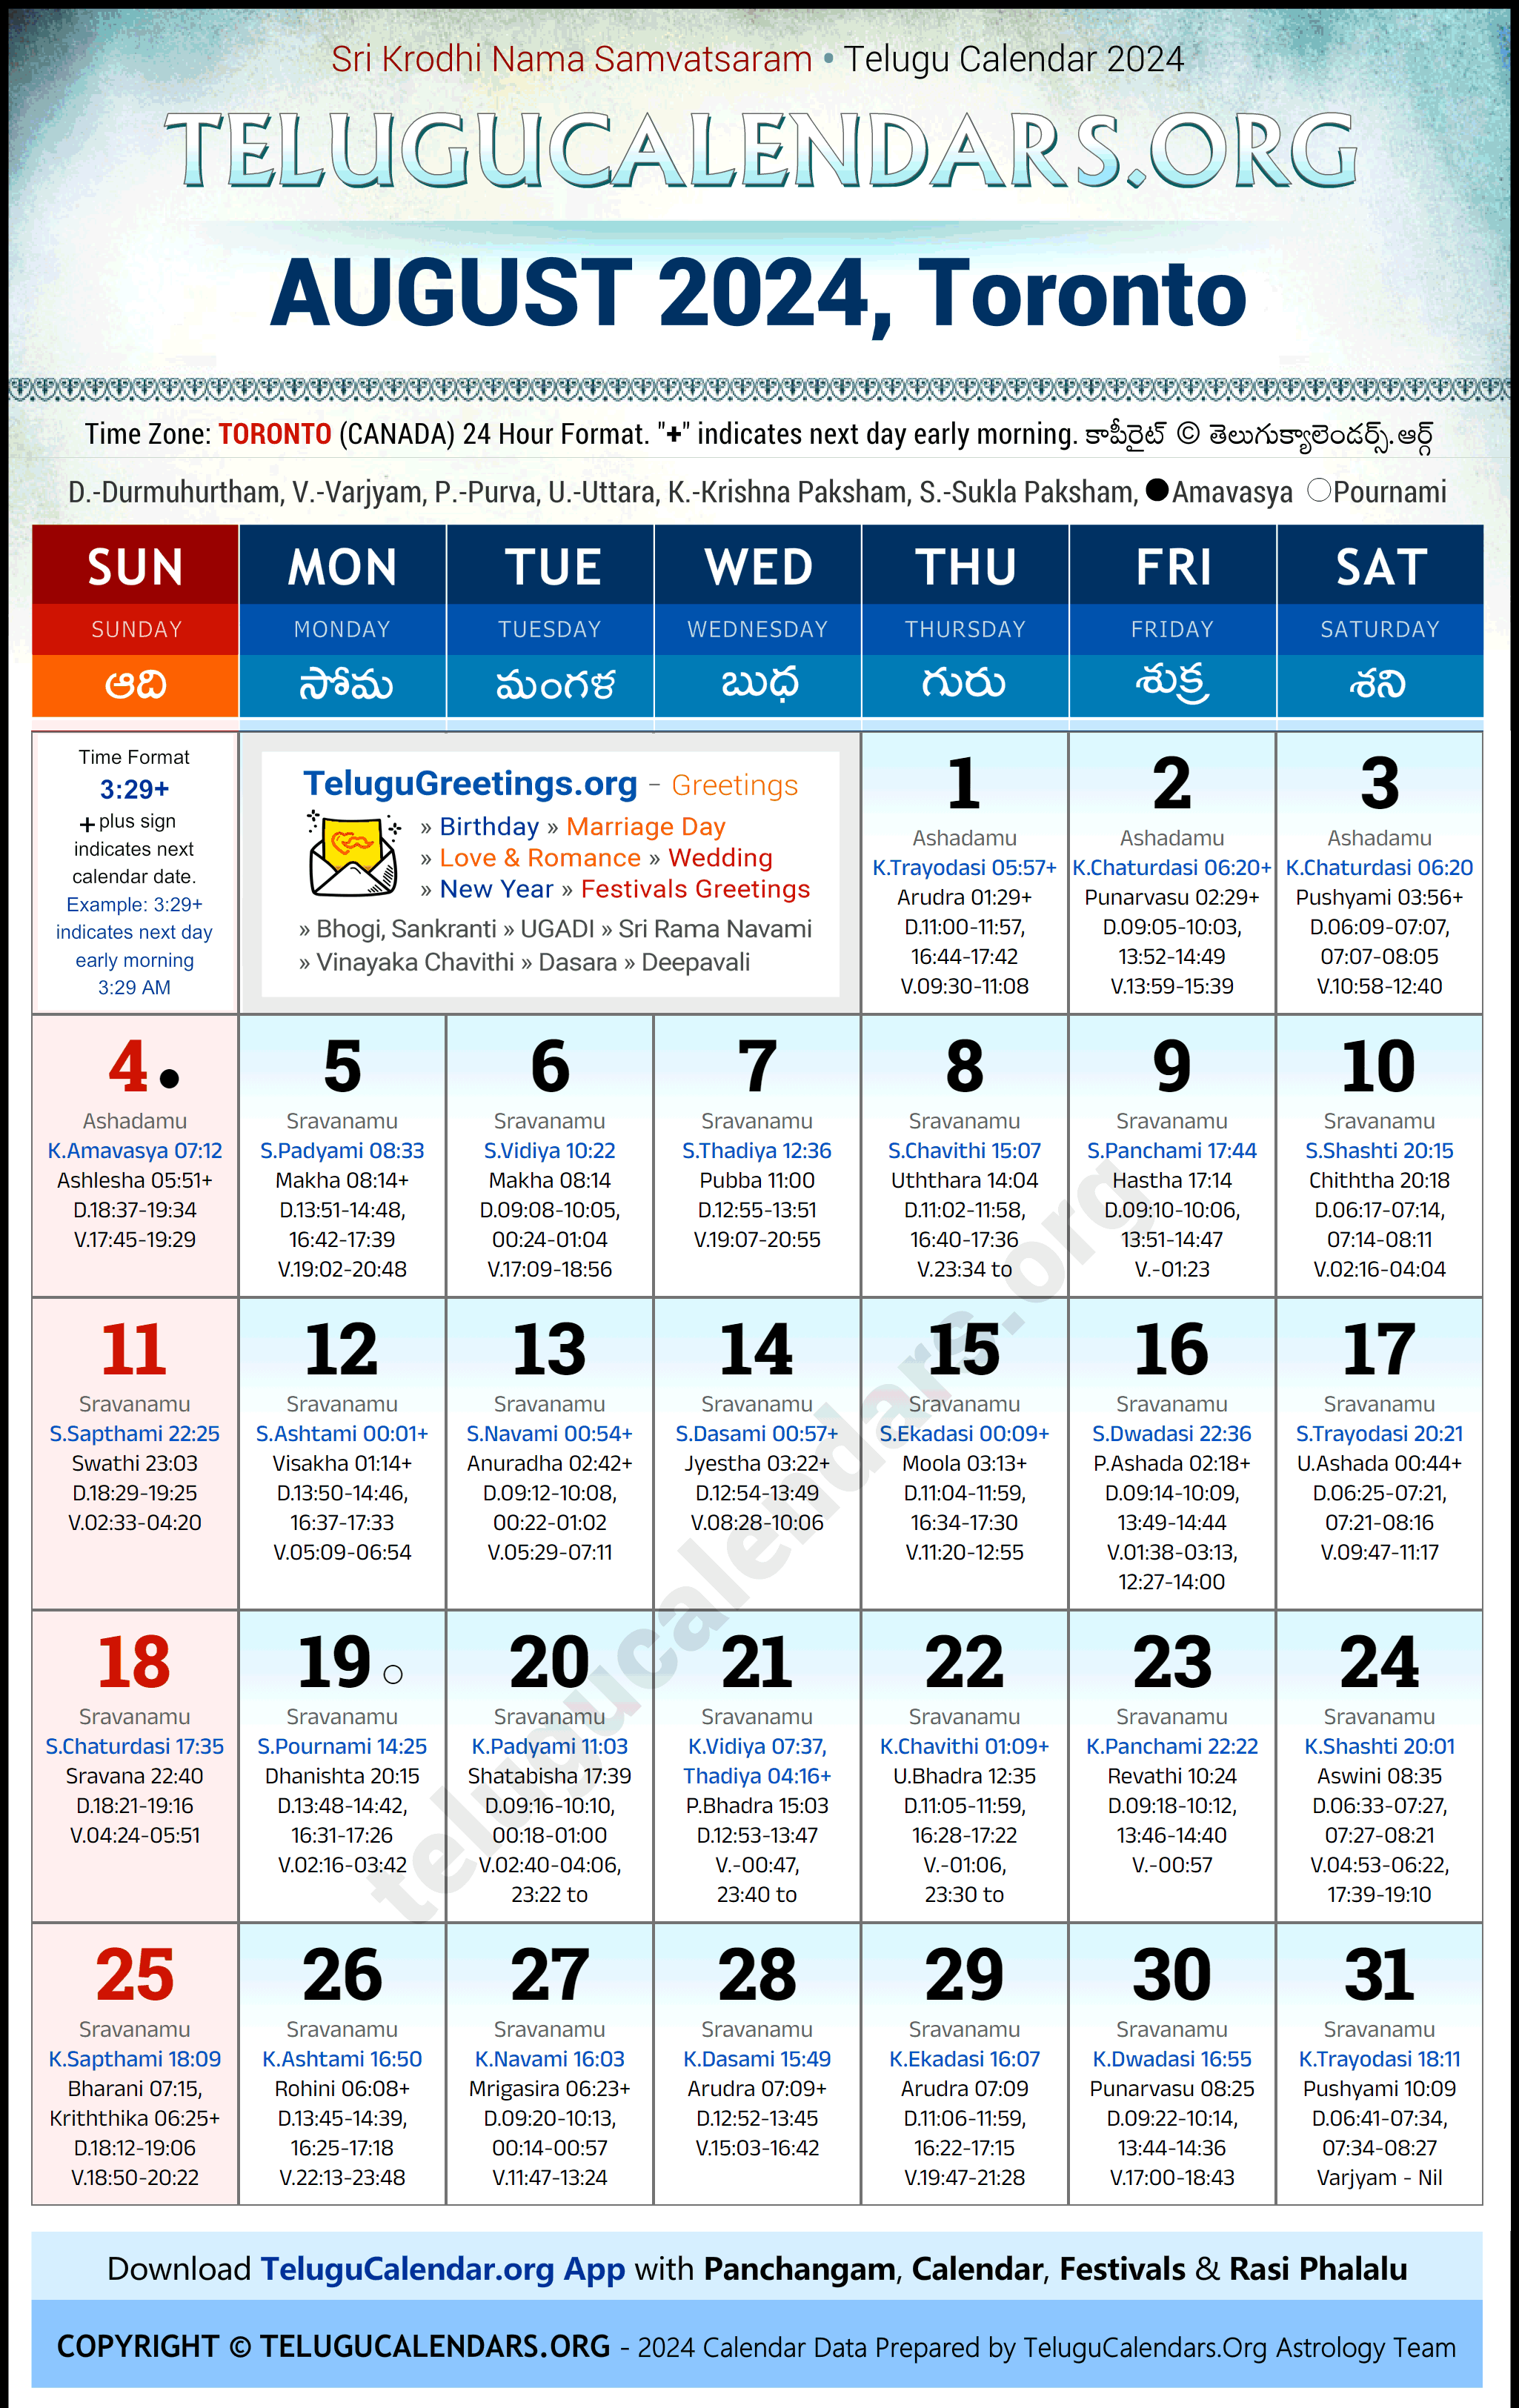 Telugu Calendar 2024 August Festivals for Toronto